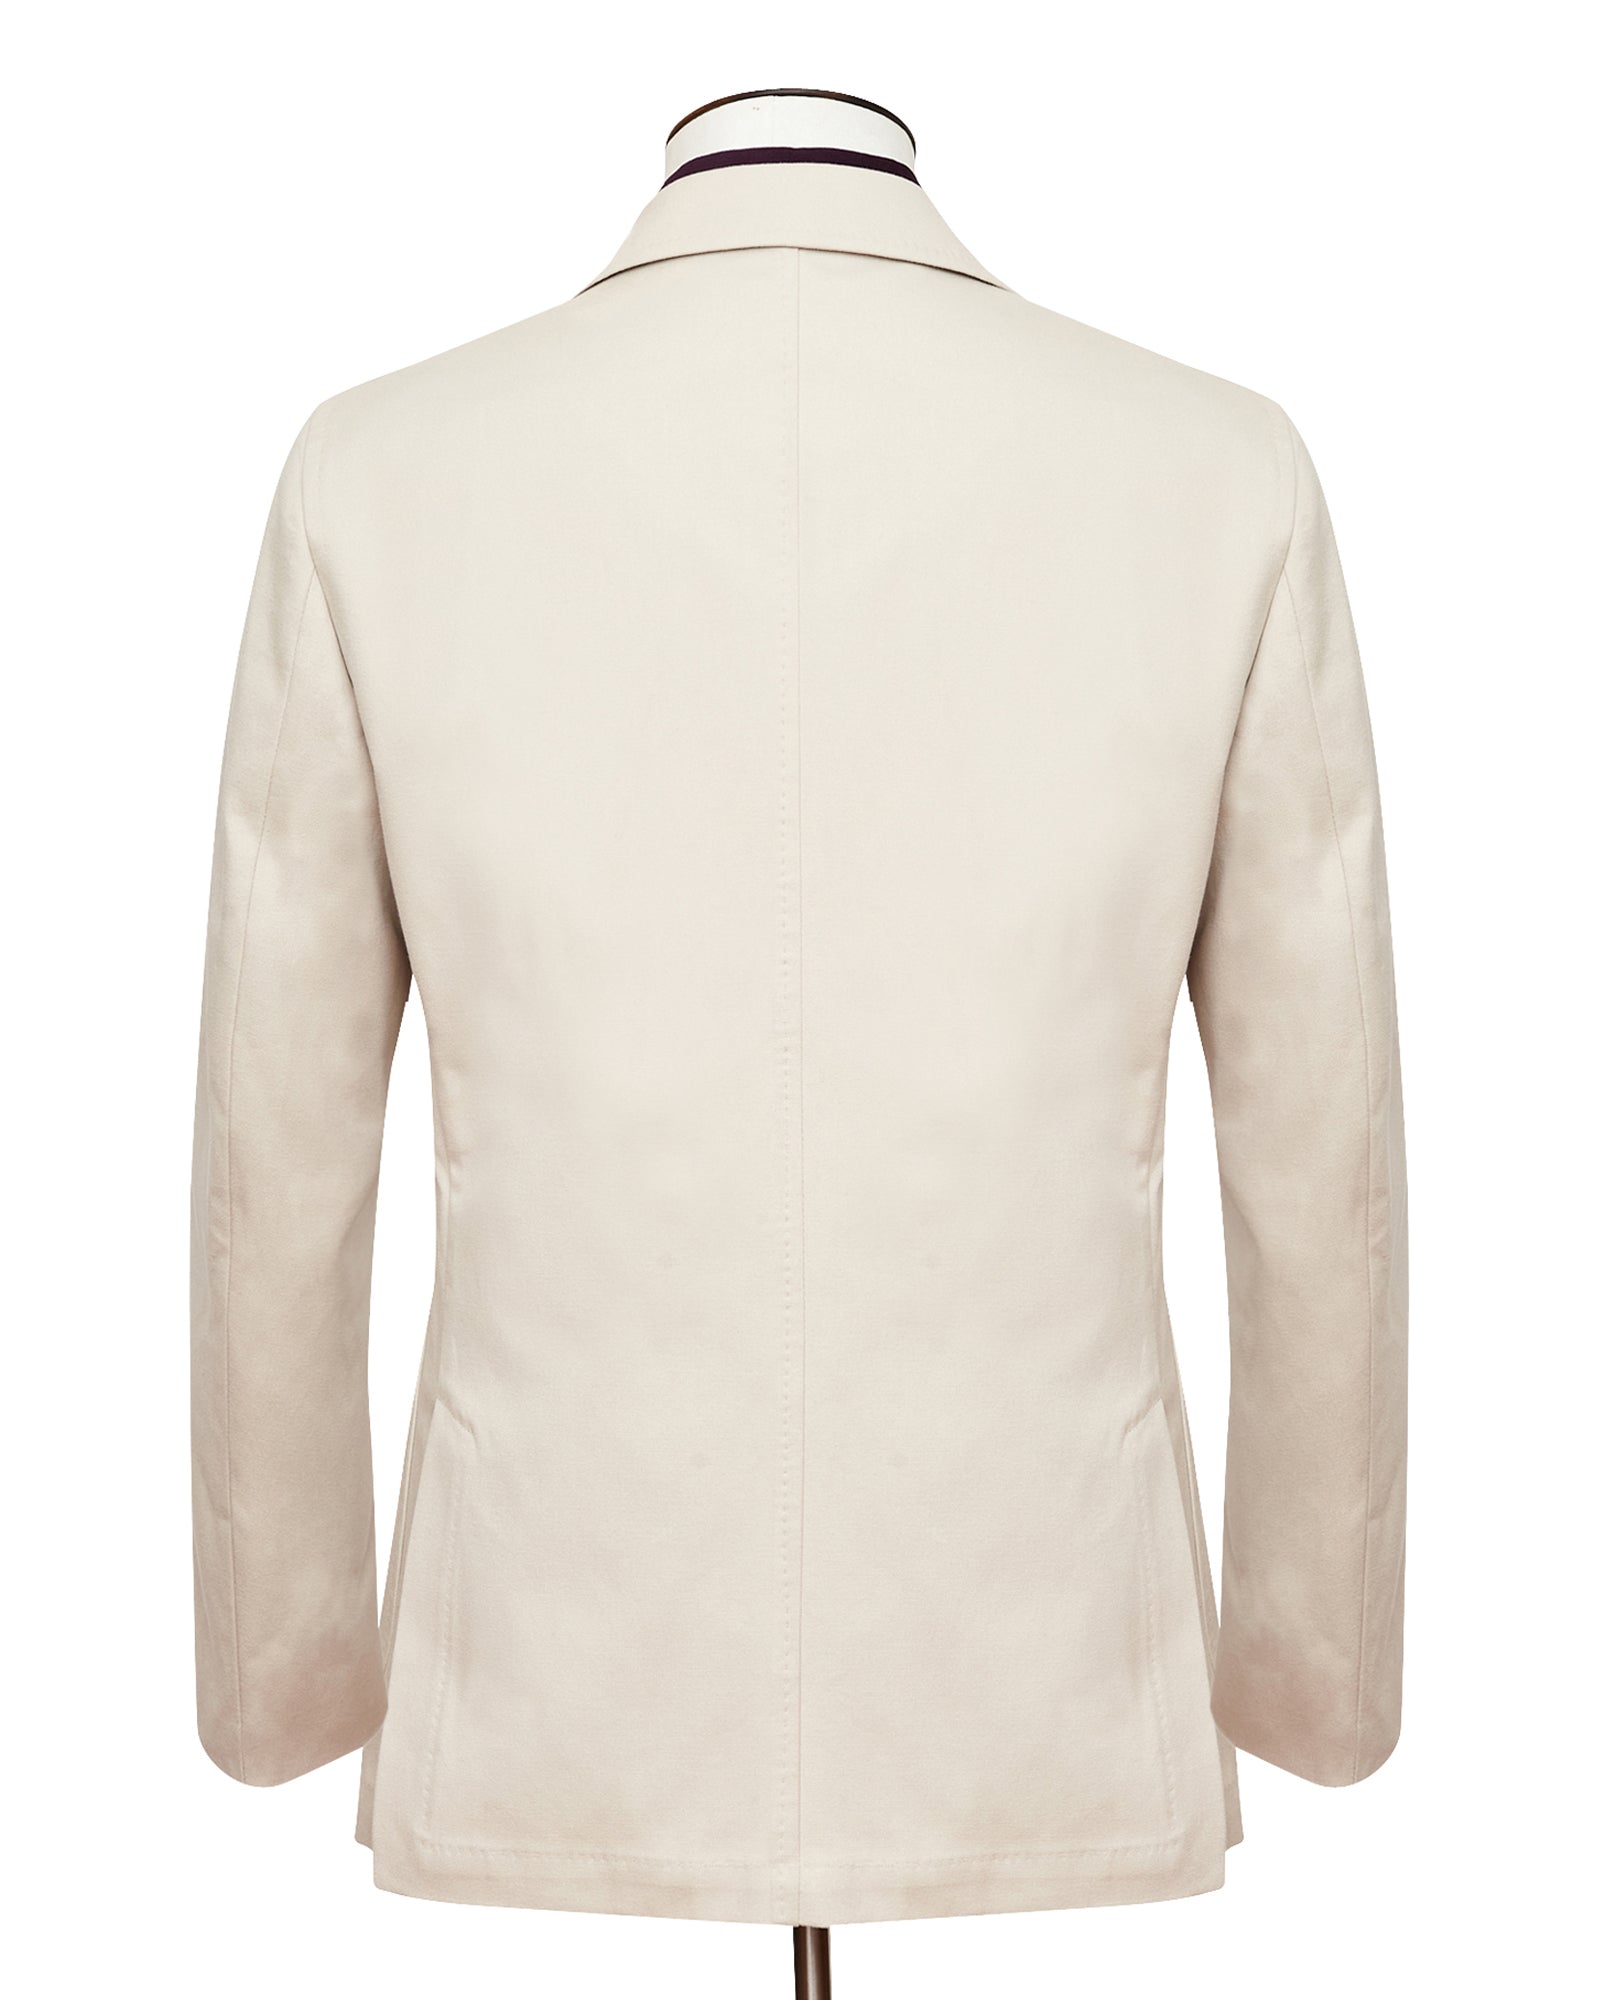 Cream Cotton Canvas Standard Jacket